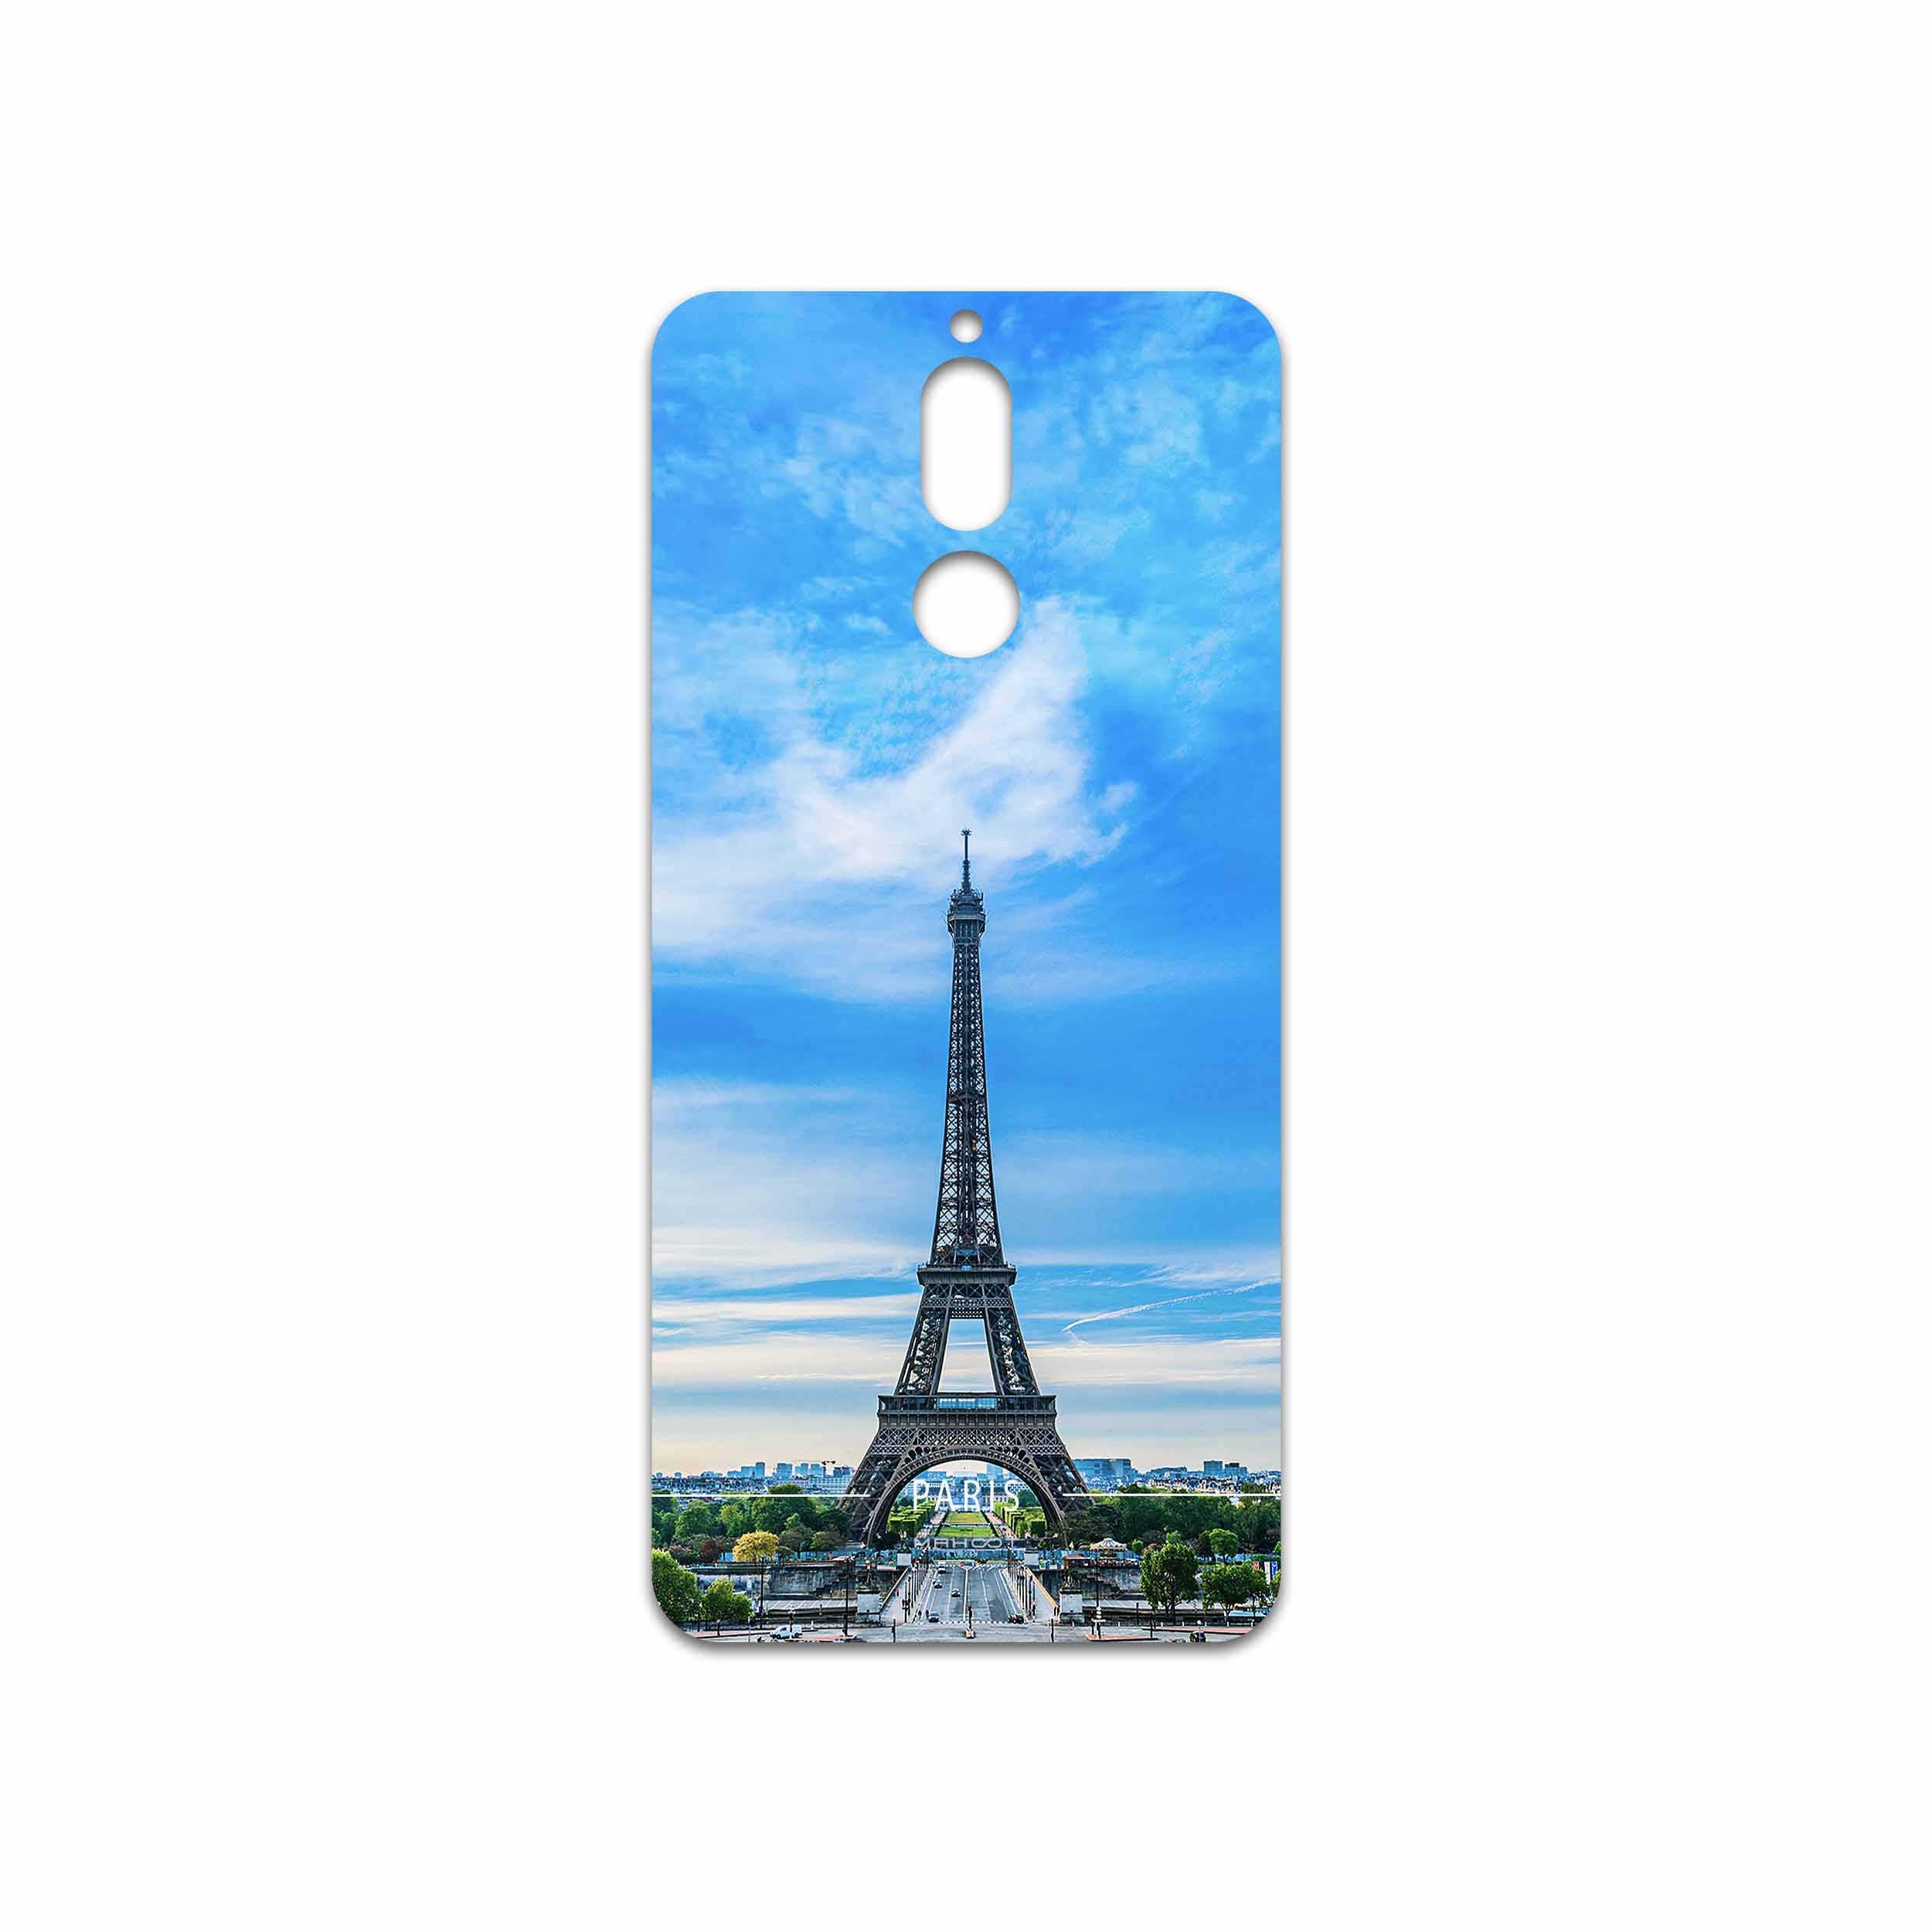 برچسب پوششی ماهوت مدل Paris City مناسب برای گوشی موبایل هوآوی Mate 10 Lite